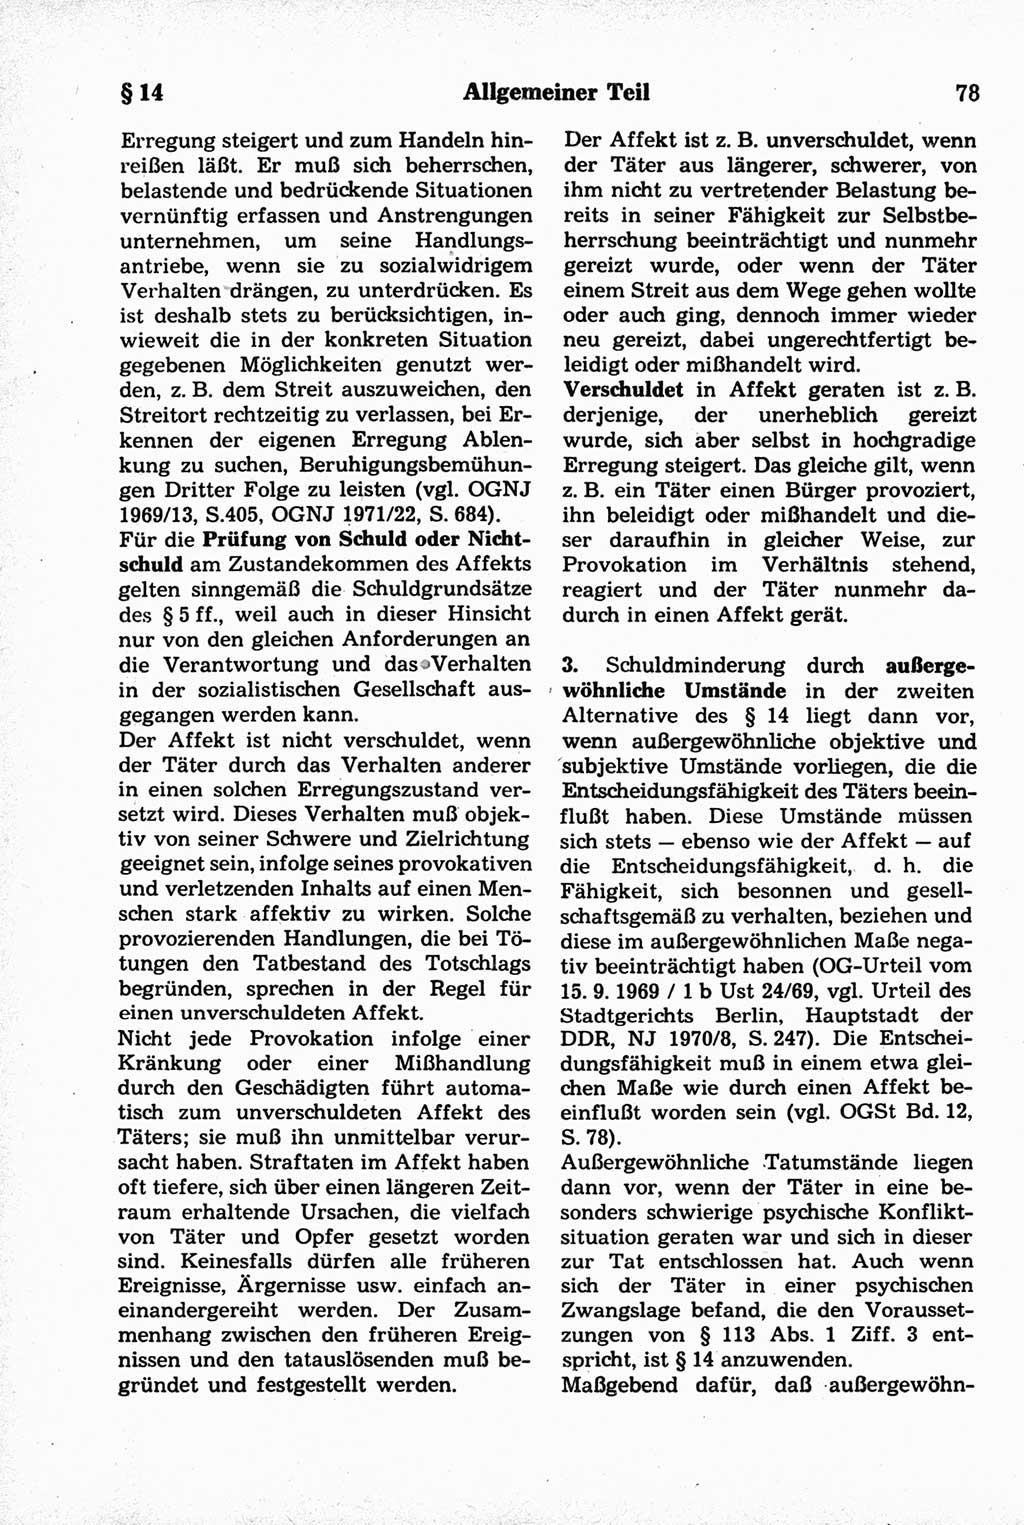 Strafrecht der Deutschen Demokratischen Republik (DDR), Kommentar zum Strafgesetzbuch (StGB) 1981, Seite 78 (Strafr. DDR Komm. StGB 1981, S. 78)